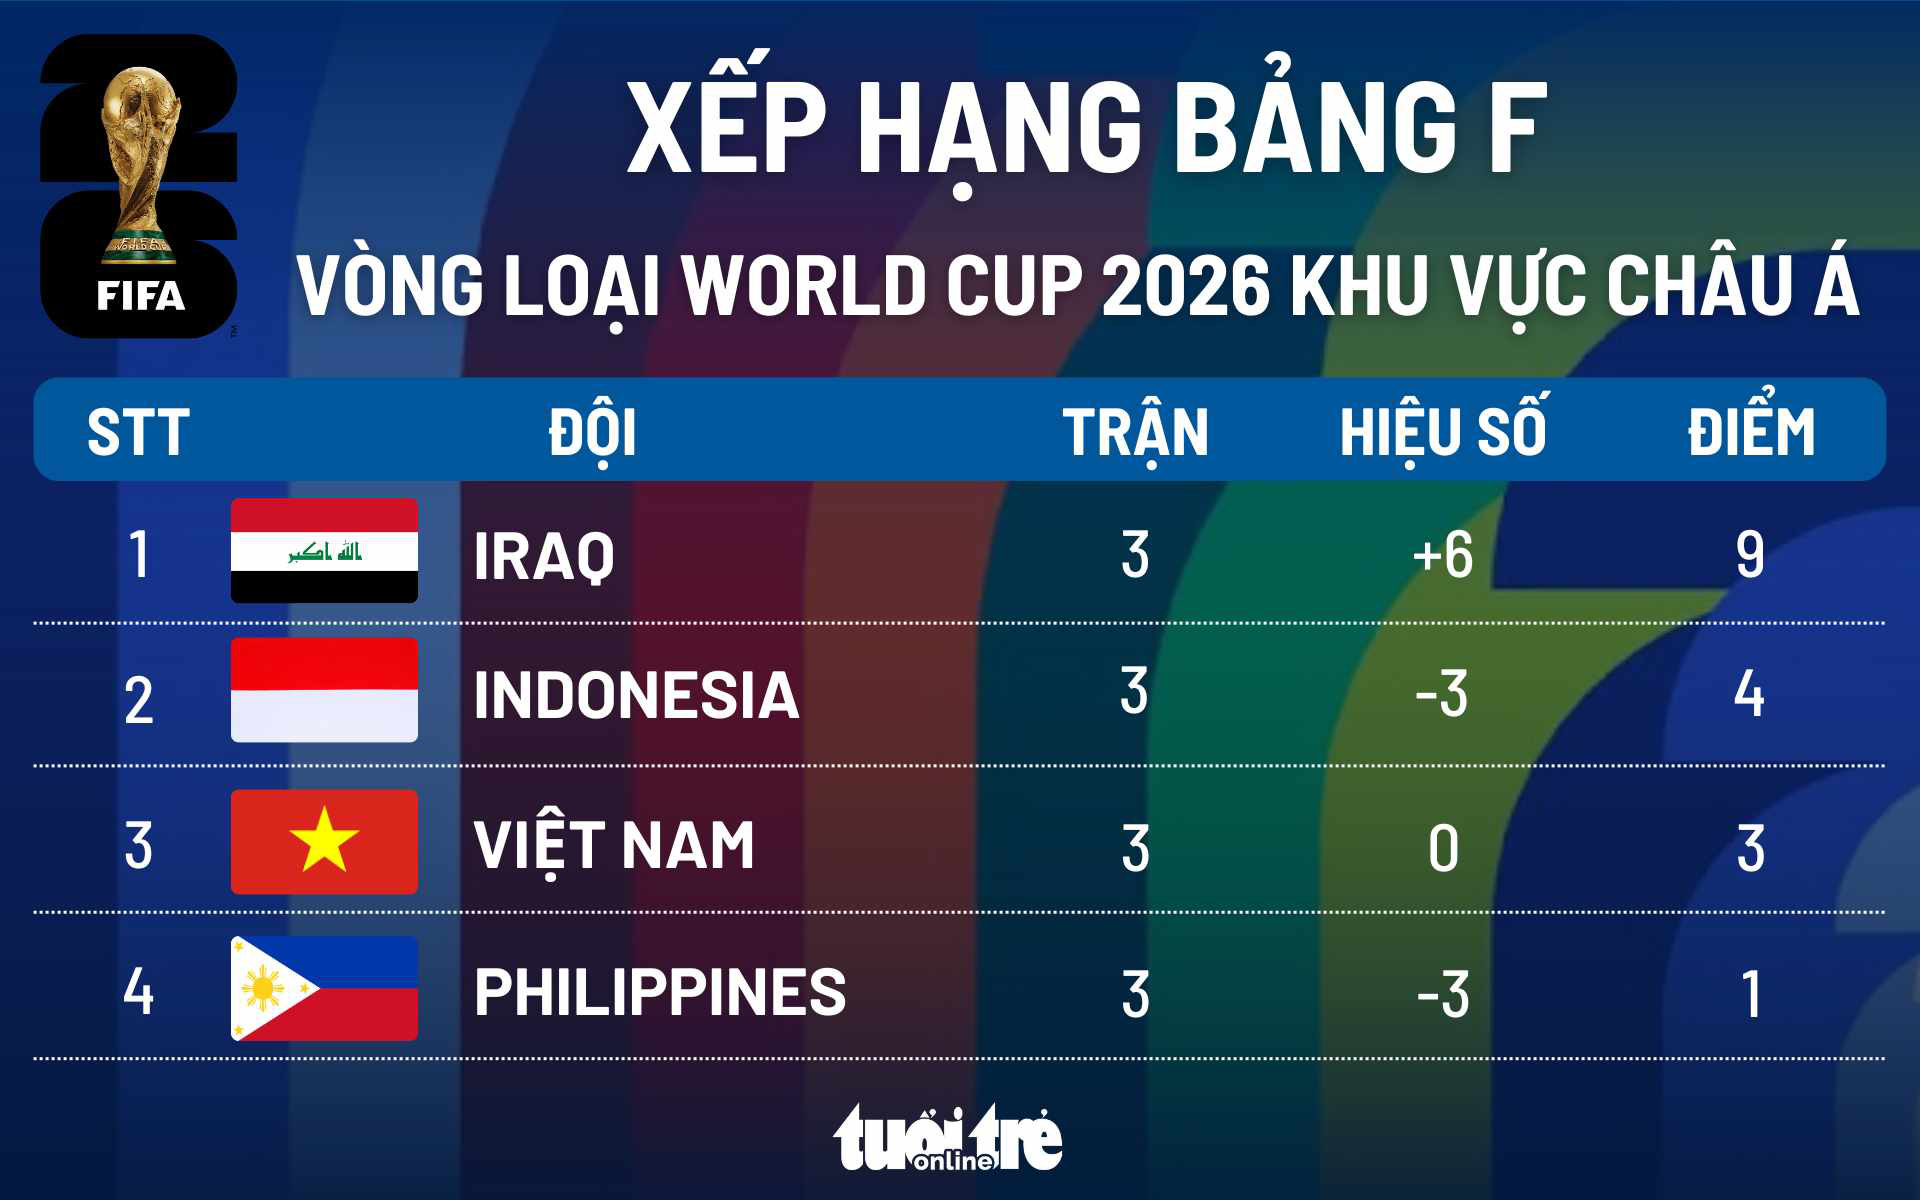 Cơ hội đi tiếp của tuyển Việt Nam thế nào sau trận thua Indonesia?